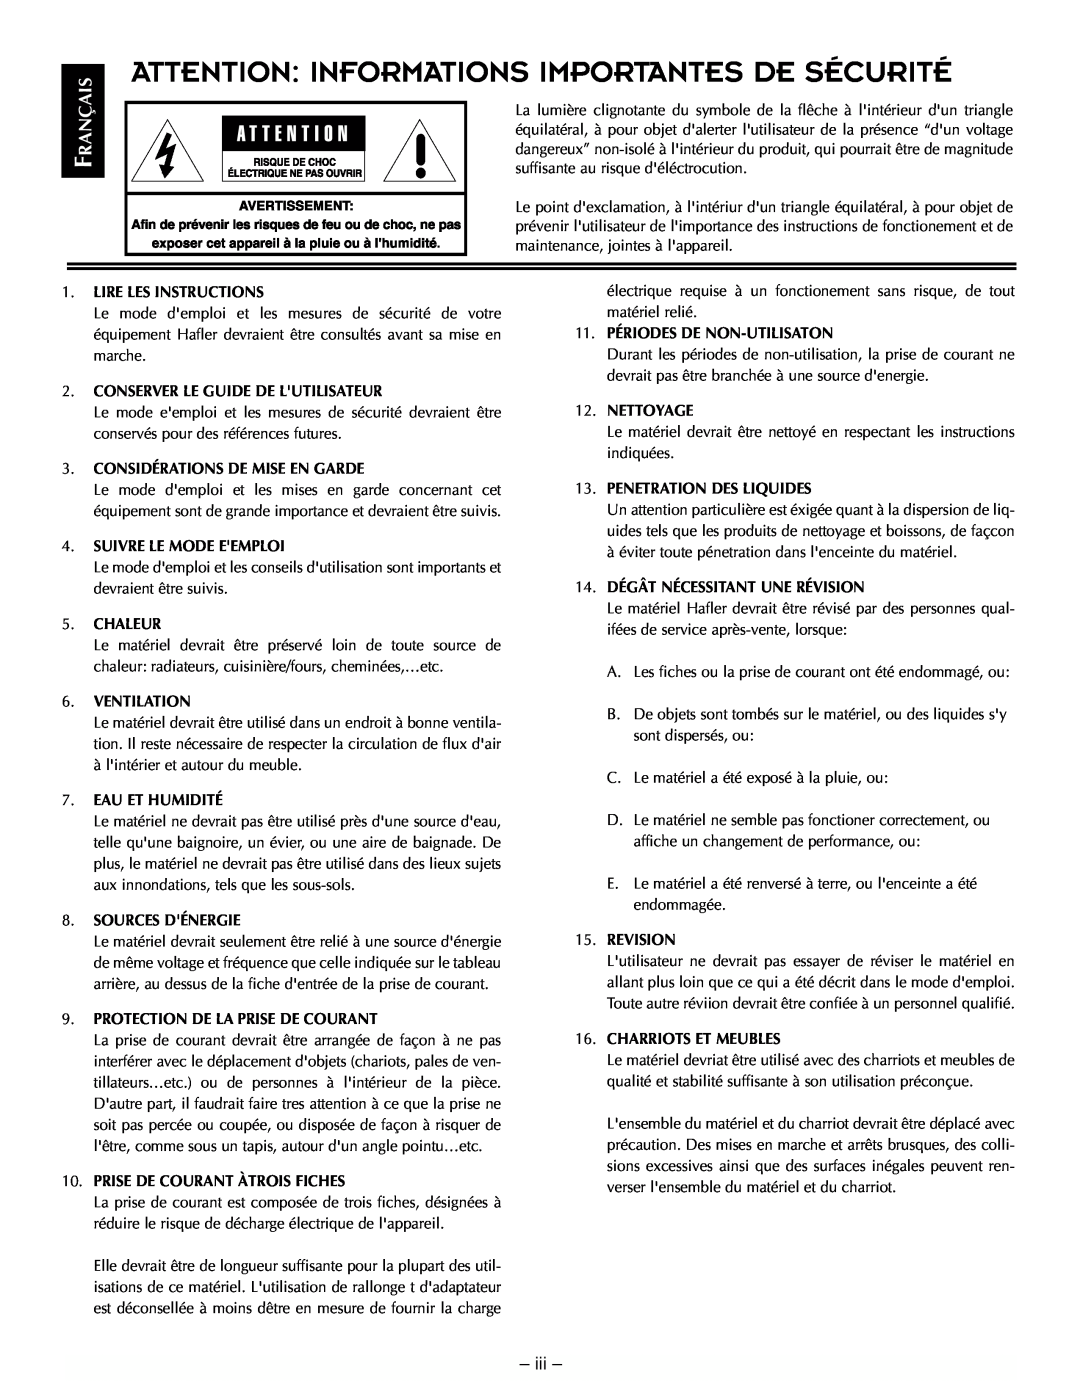 Hafler TRM12.1, TRM10.1 manual Attention Informations Importantes De Sécurité, Rançais, iii 